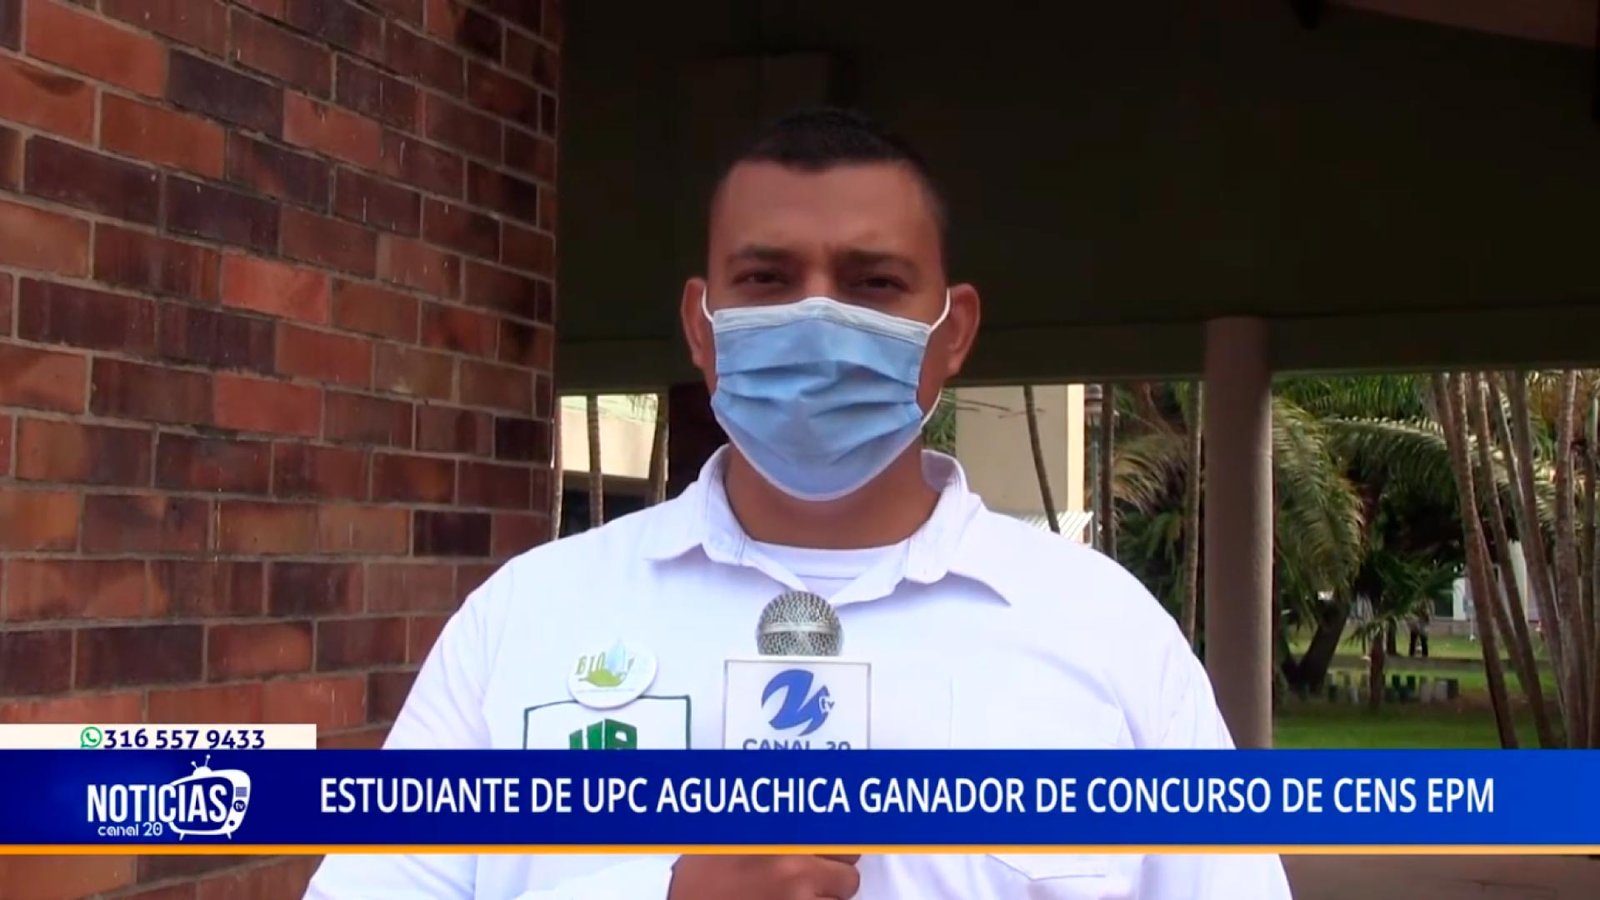 ESTUDIANTE DE UPC AGUACHICA GANADOR DE CONCURSO DE CENS EPM